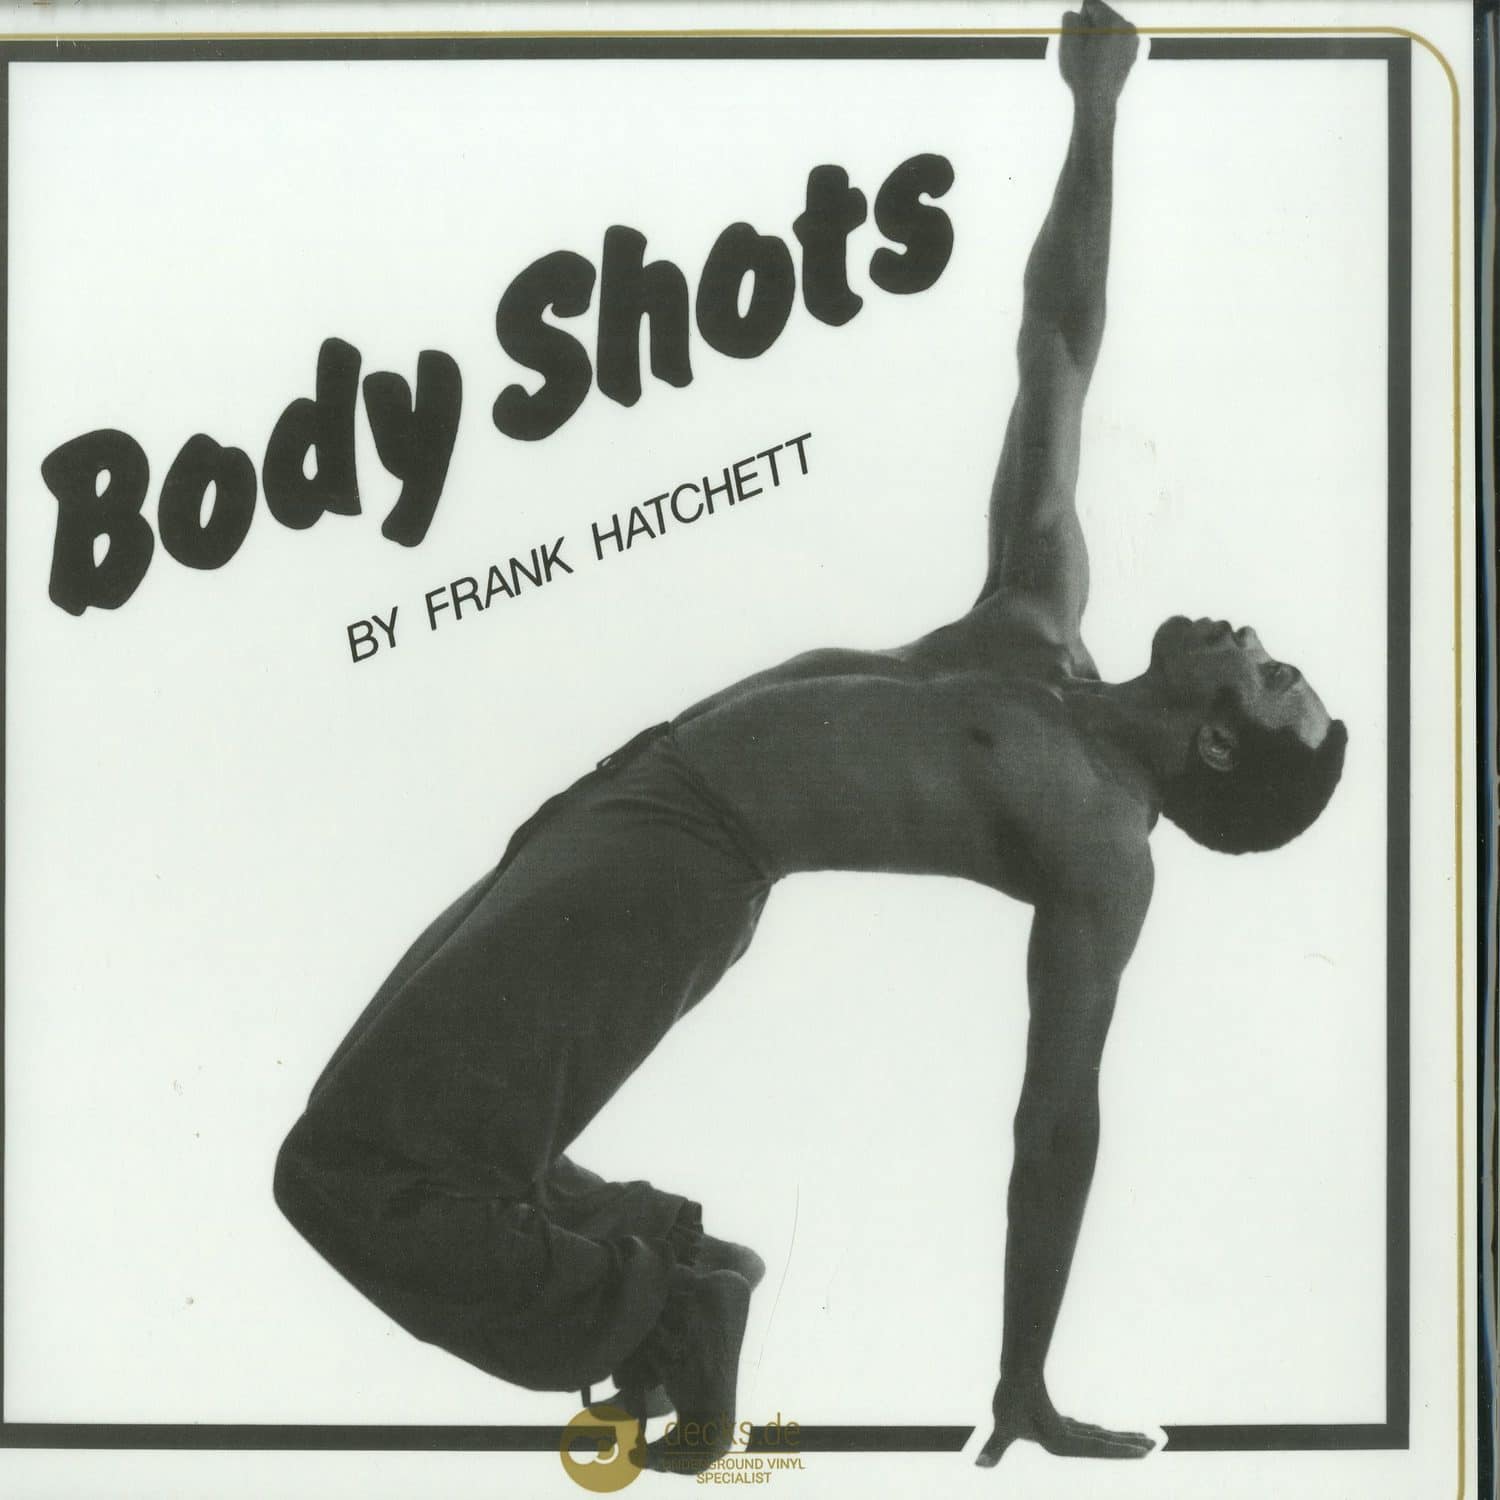 Frank Hatchett - BODY SHOTS